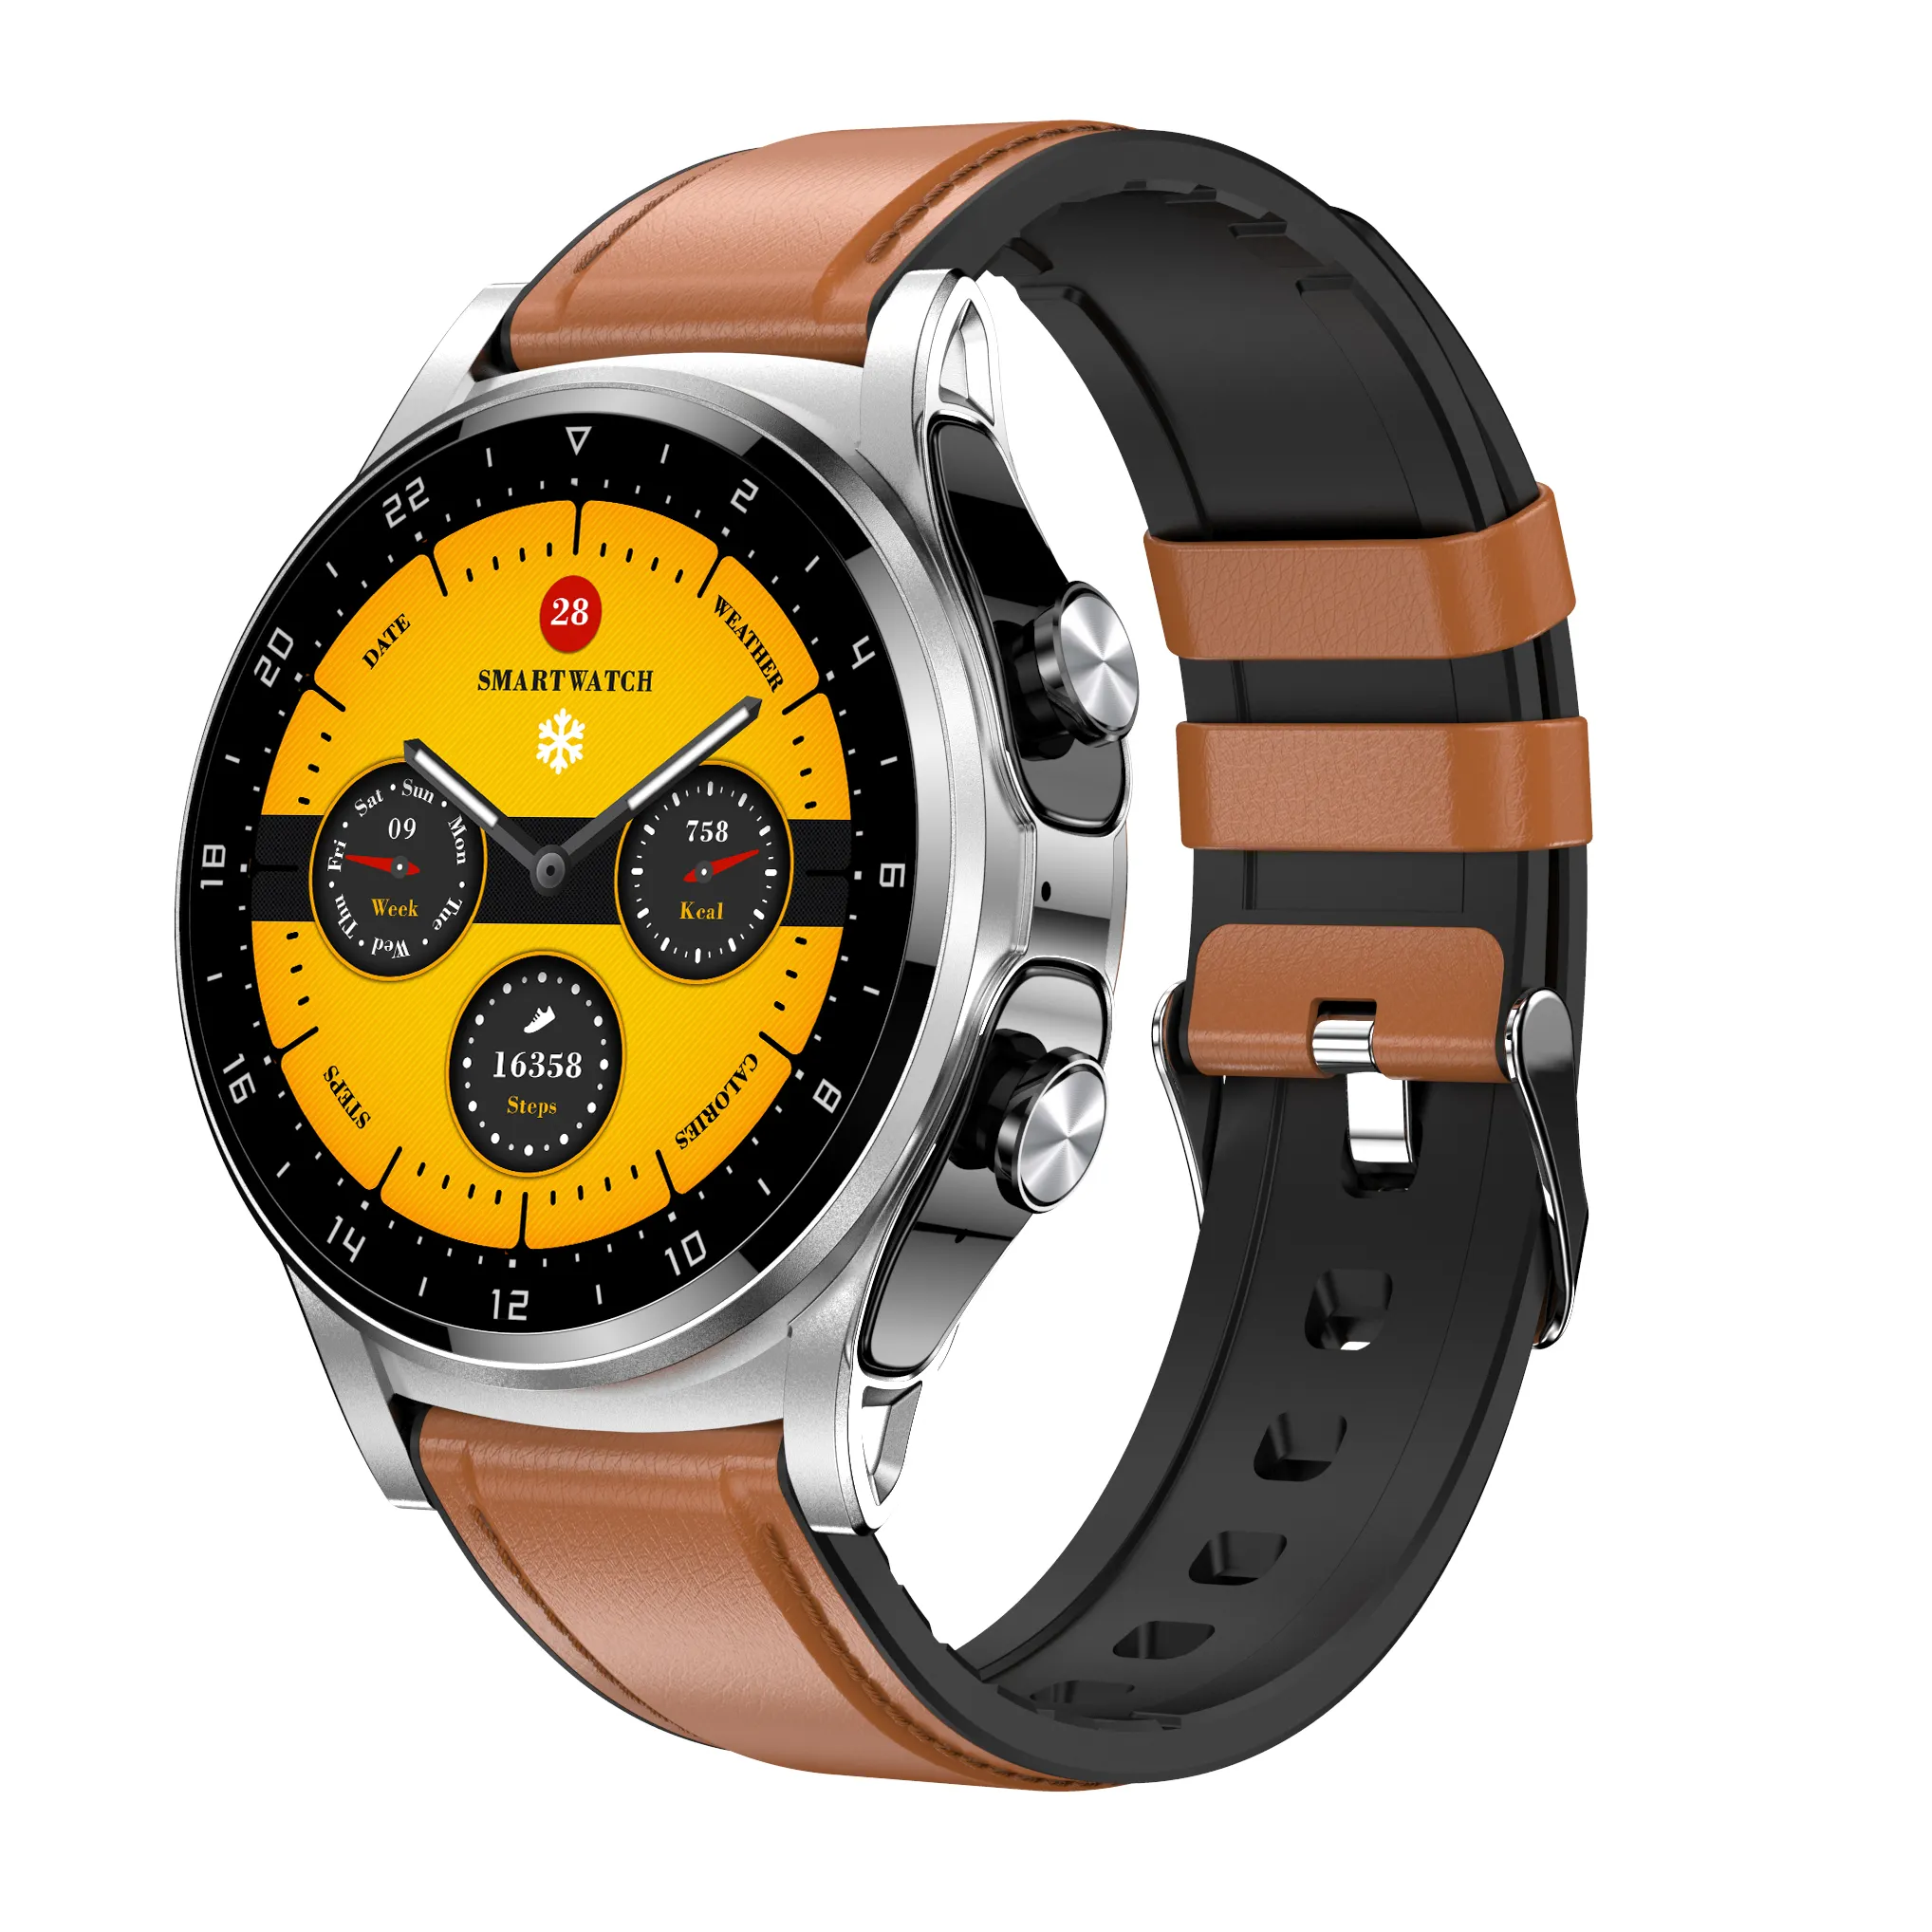 TWS 2 in 1 Smart Watch Upgrade Uhr Smartphone einfach anzurufen GT66 Tragbare Geräte BT Musik steuerung TWS Ohrhörer Herzfrequenz